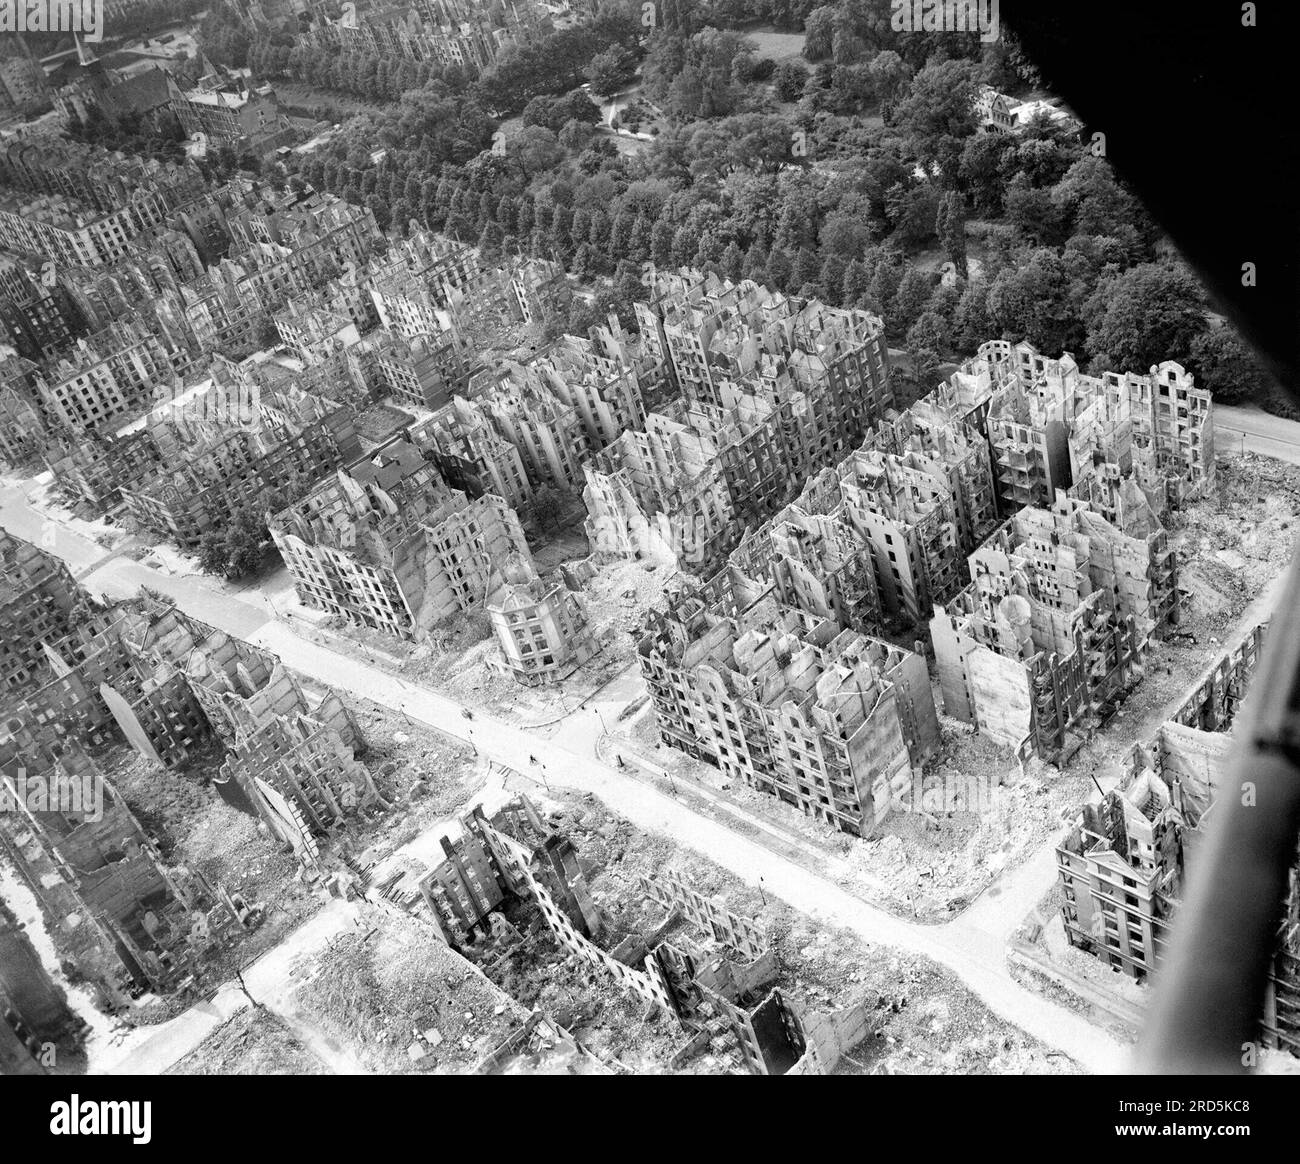 Königliches Luftwaffenbomberkommando, 1942-1945. Schräge Sicht aus der Vogelperspektive auf die Ruinen von Wohn- und Geschäftsgebäuden südlich des Eilbektal-Parks (rechts oben) im Stadtteil Eilbek in Hamburg. Diese waren unter den 16.000 mehrstöckigen Wohngebäuden, die durch den Feuersturm zerstört wurden, der sich während des Überfalls des Bomberkommandos in der Nacht vom 27/28. Juli 1943 (Operation GOMORRAH) entwickelte. Die Straße, die von oben links nach unten rechts schräg verläuft, ist der Eilbeker Weg, der von der Rückertstraße überquert wird. Stockfoto